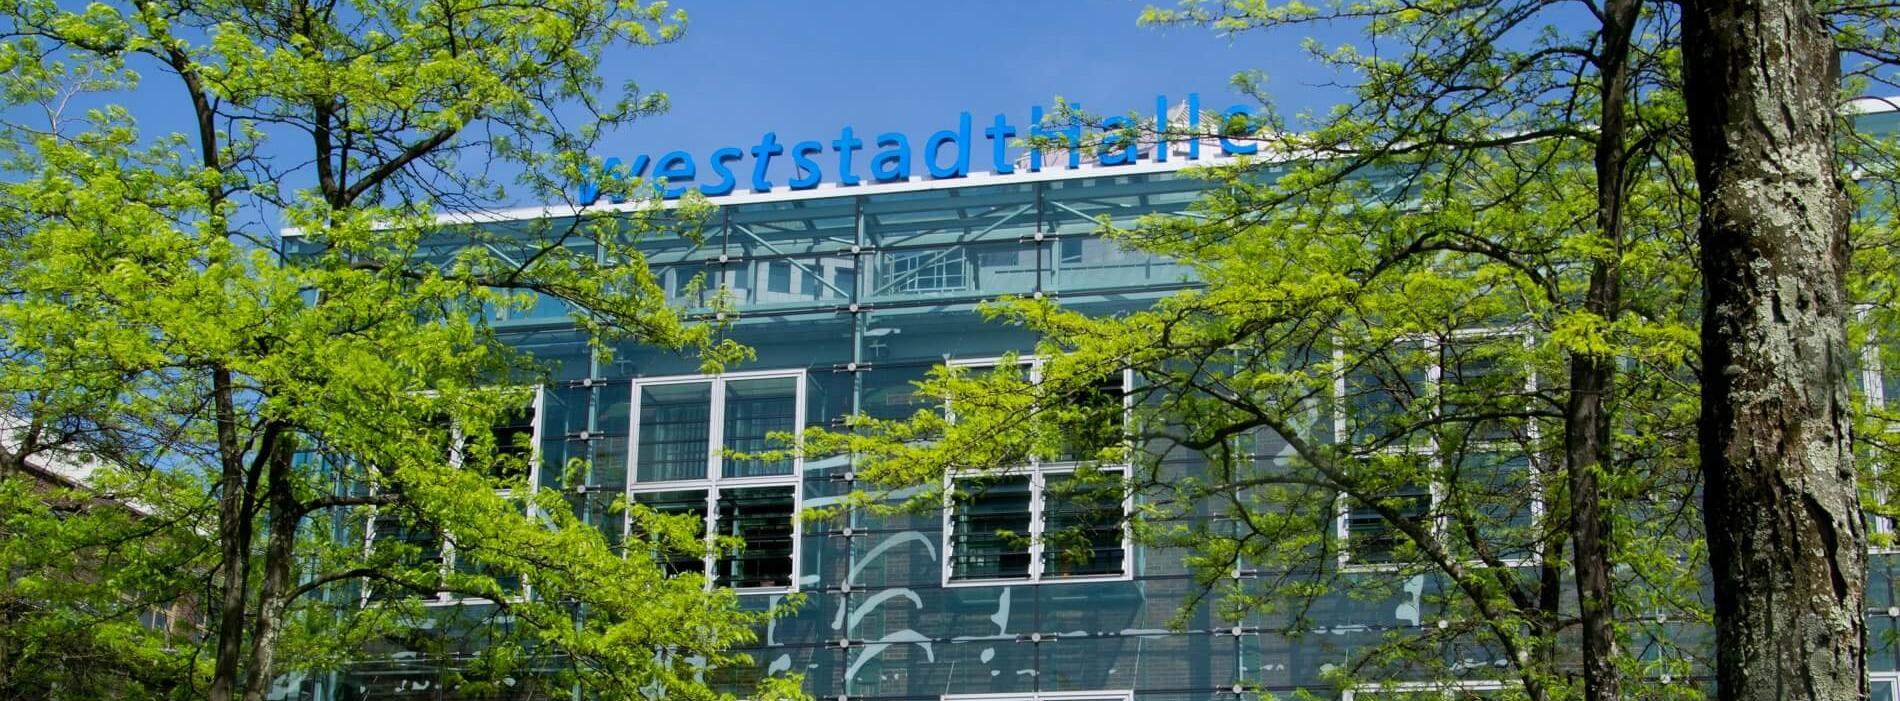 Weststadthalle Essen photo